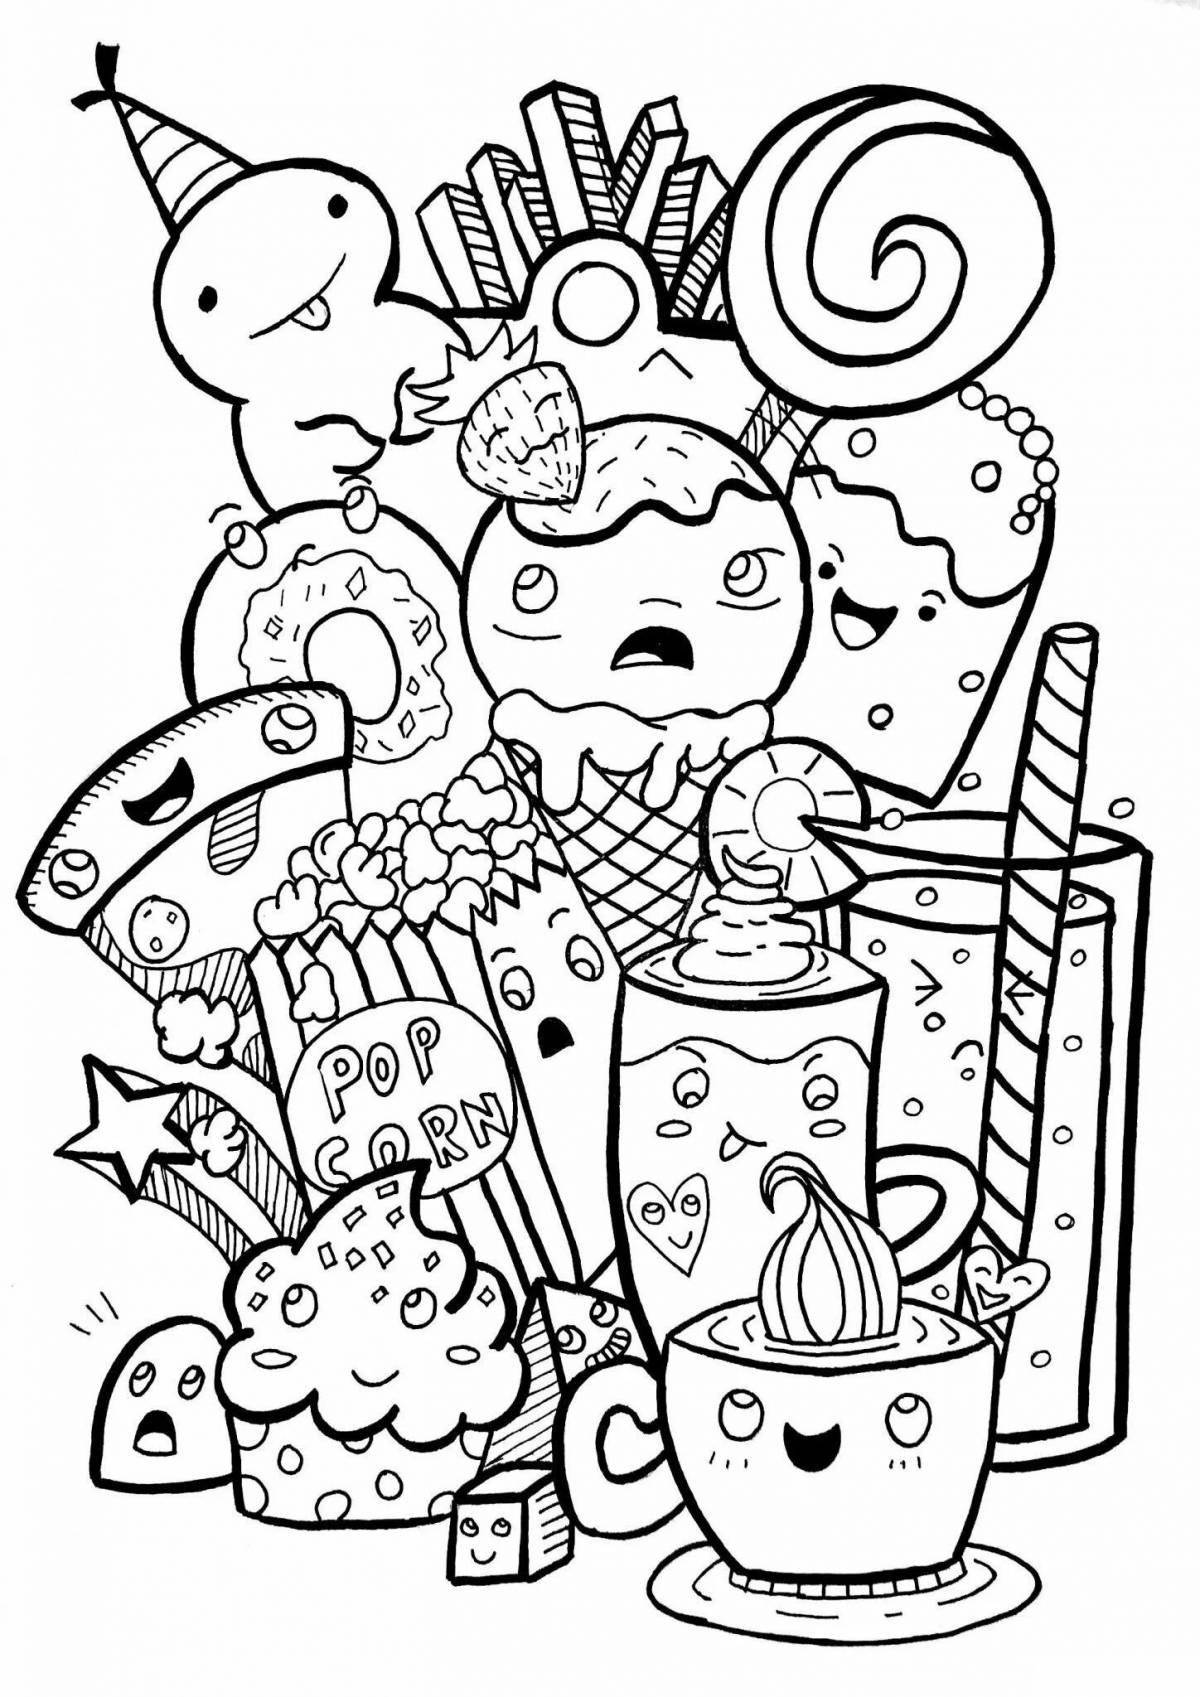 Fantastic kawaii food coloring page